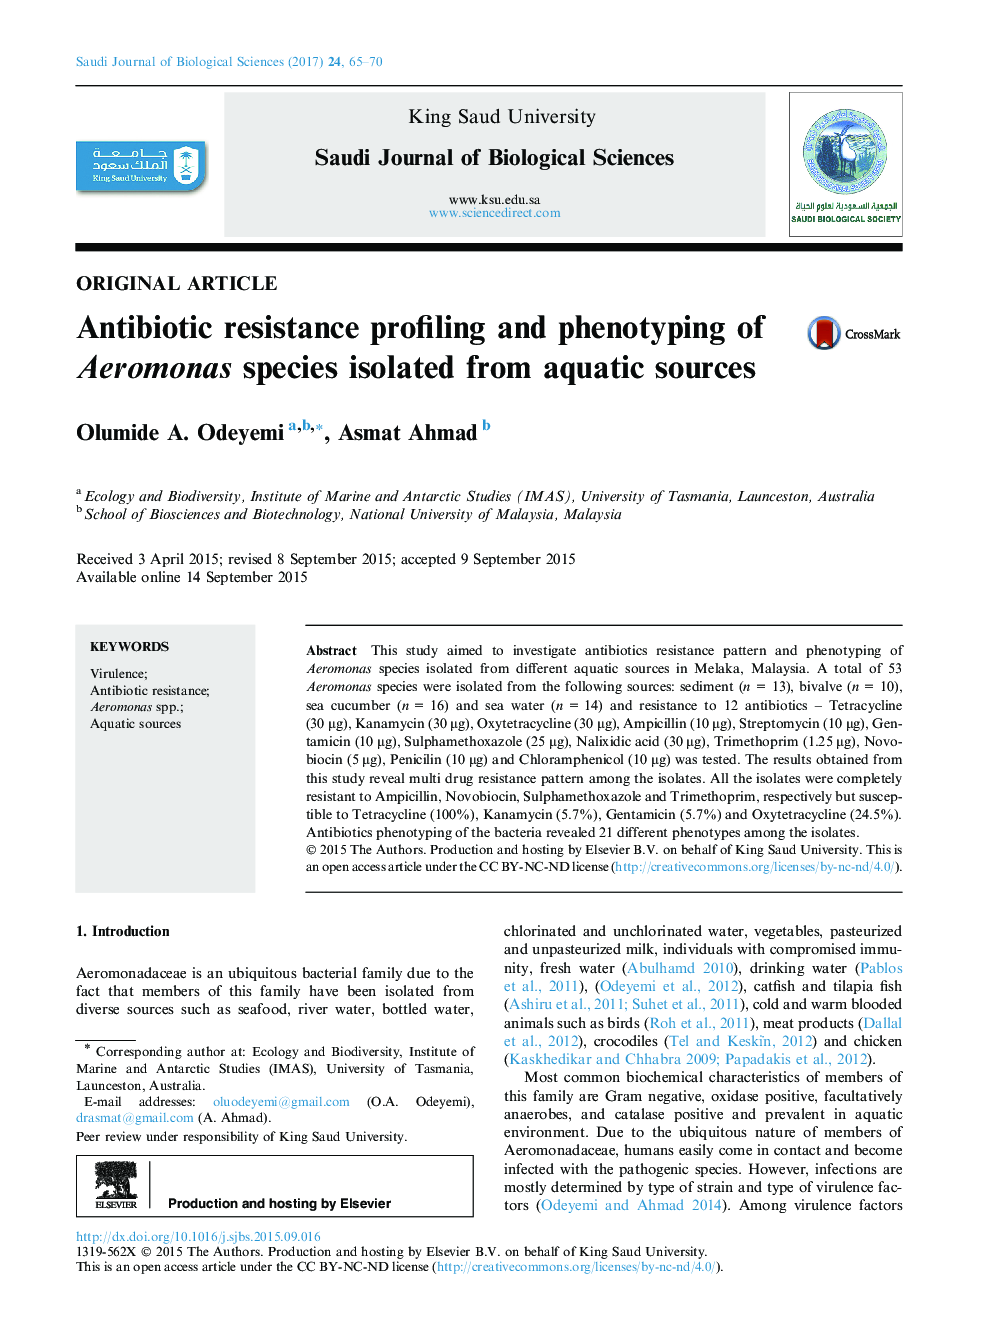 مقاله اصلی پروفایل مقاومت به آنتیبیوتیک و فنوتیپی گونه های آئروموناس جدا شده از منابع آبزی 